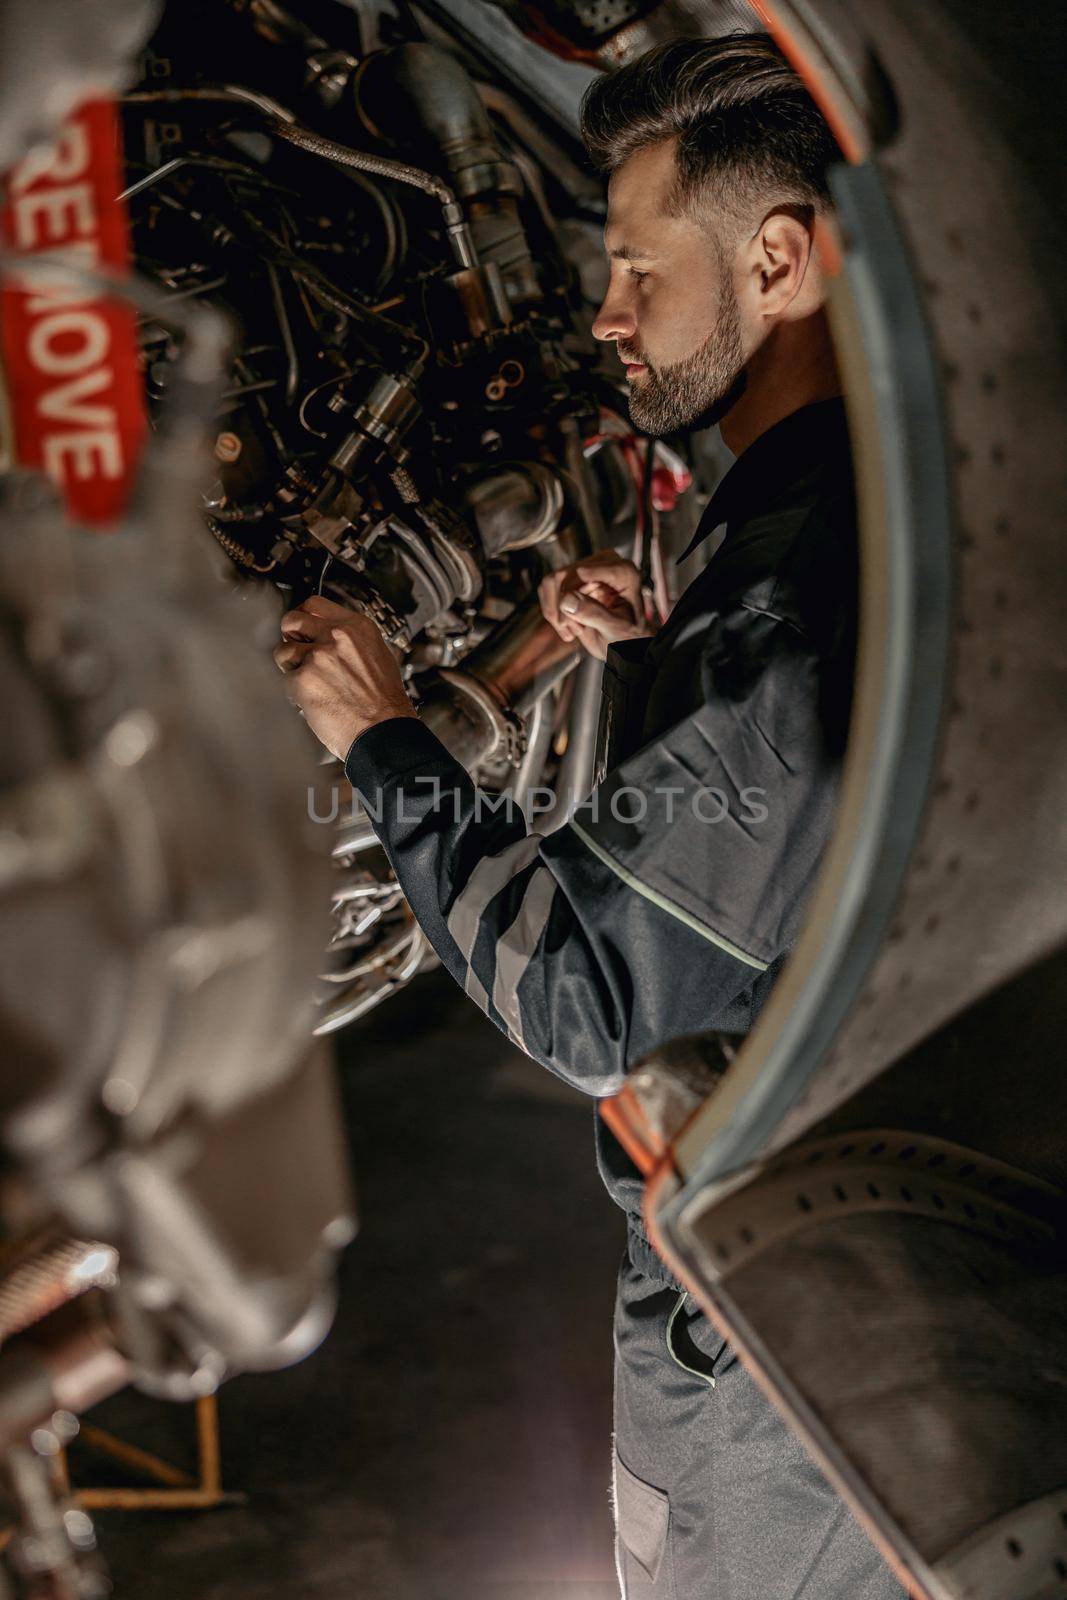 Male airline mechanic repairing aircraft in hangar by Yaroslav_astakhov